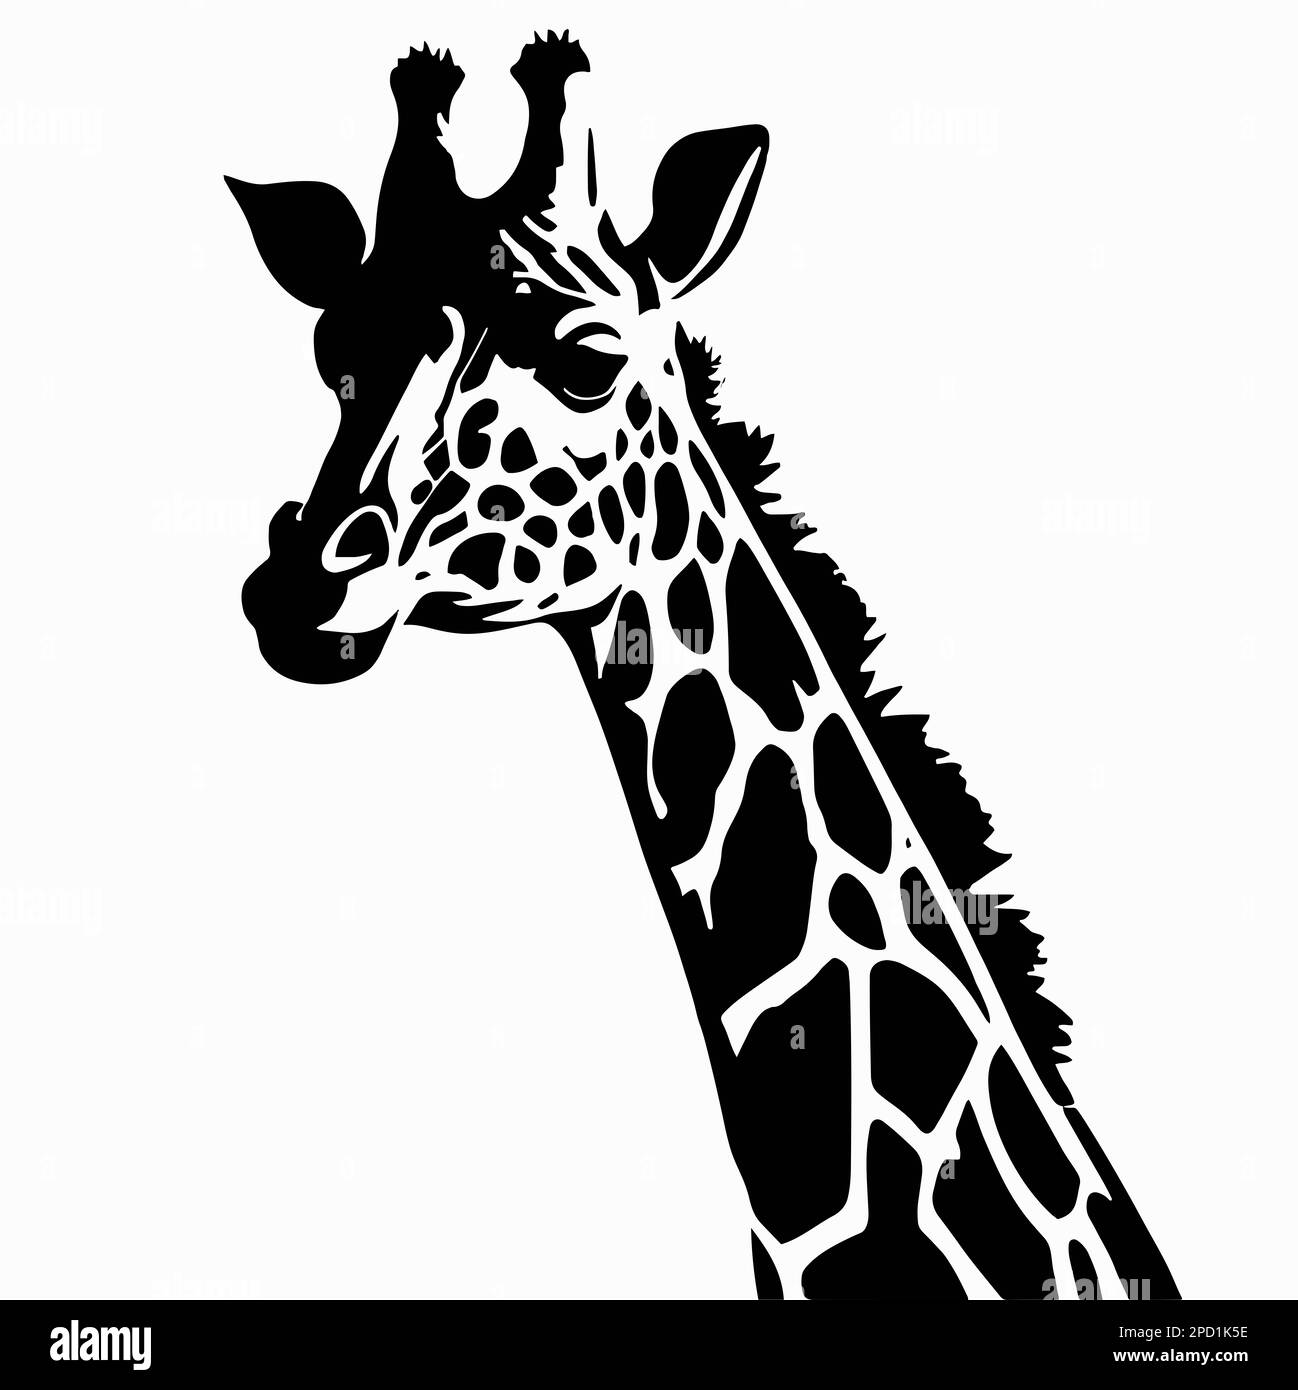 Silhouette de tête et de cou girafe noire sur fond blanc. Vecteur animal africain, concept pour safari savane, tatouage design, icône isolée avec g Banque D'Images